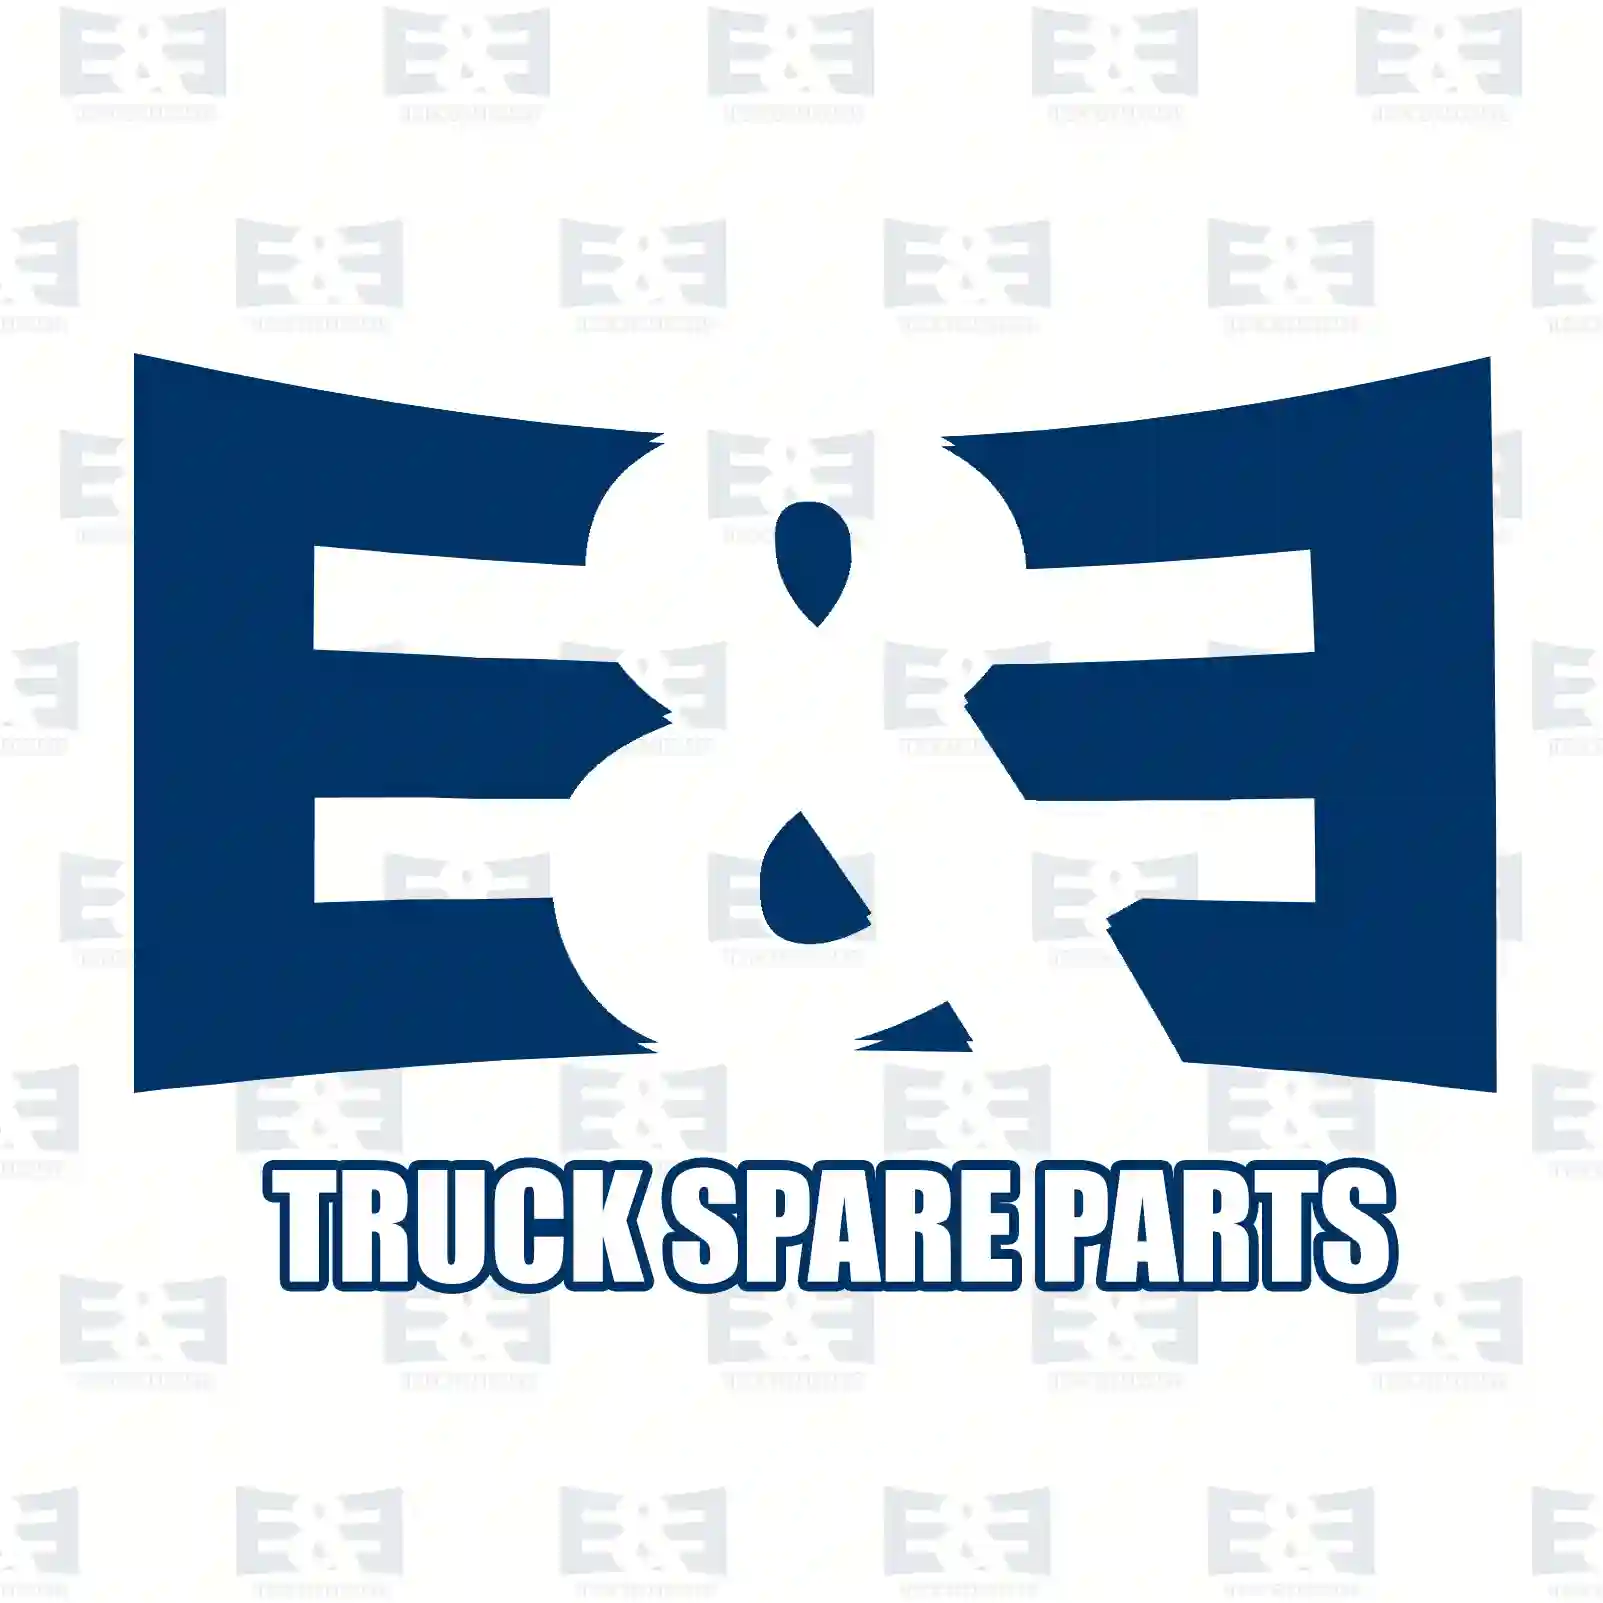 Brake disc, 2E2293920, 02996010, 07187567, 2996010, 7187567, , , , ||  2E2293920 E&E Truck Spare Parts | Truck Spare Parts, Auotomotive Spare Parts Brake disc, 2E2293920, 02996010, 07187567, 2996010, 7187567, , , , ||  2E2293920 E&E Truck Spare Parts | Truck Spare Parts, Auotomotive Spare Parts